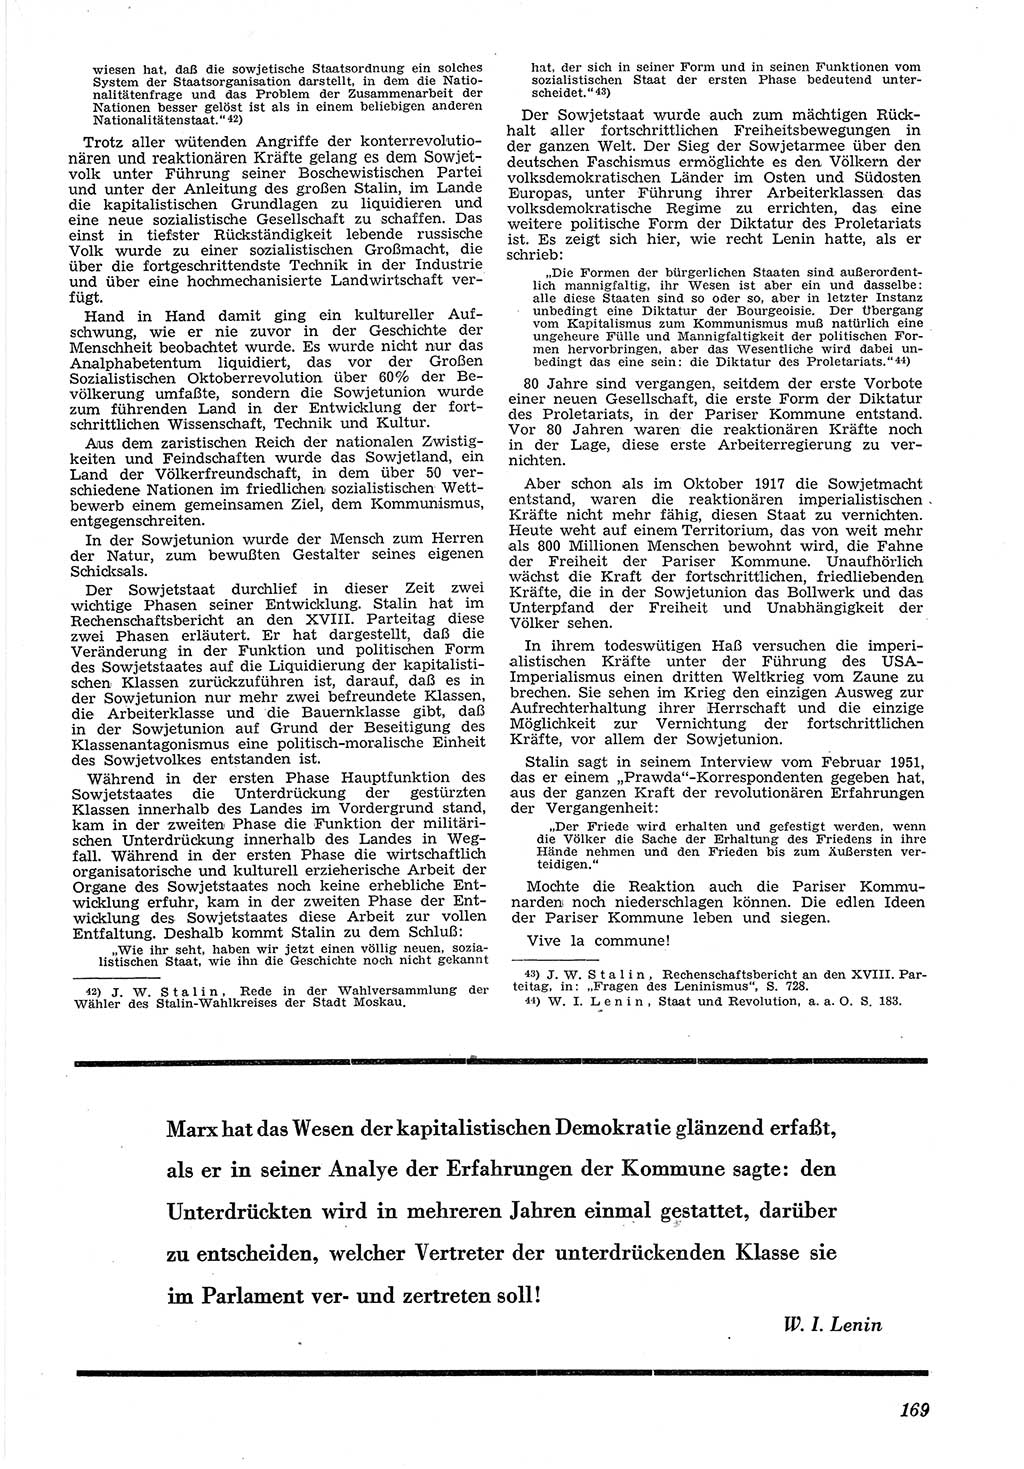 Neue Justiz (NJ), Zeitschrift für Recht und Rechtswissenschaft [Deutsche Demokratische Republik (DDR)], 5. Jahrgang 1951, Seite 169 (NJ DDR 1951, S. 169)